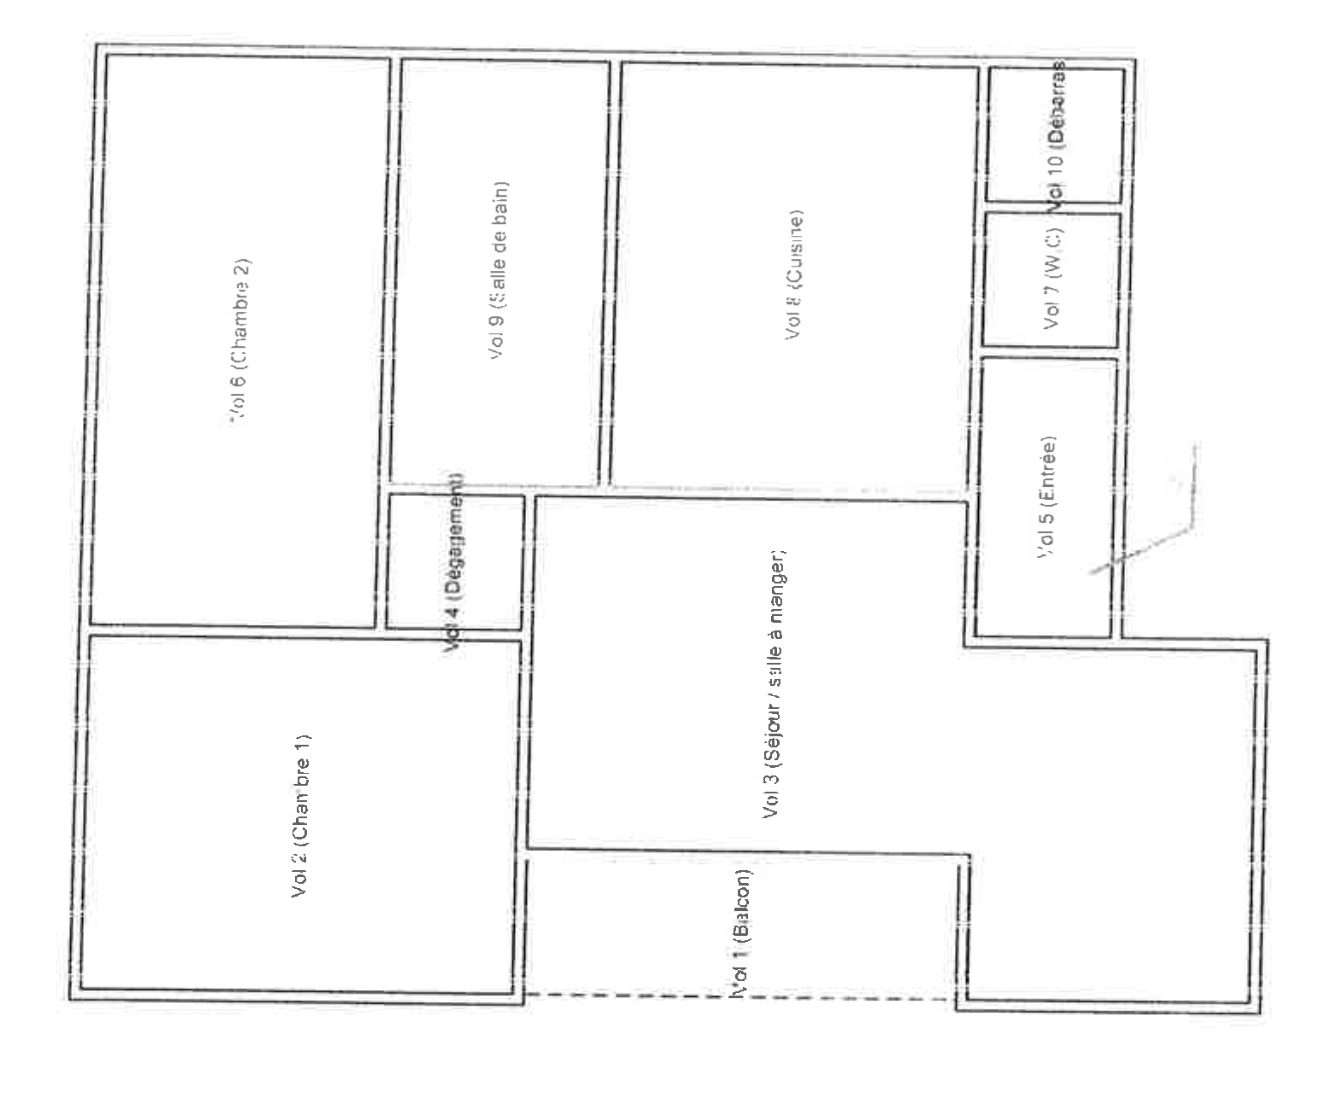 3/4 P Dernier étage & balcon - achat appartement Strasbourg - Bintz Immobilier - 10